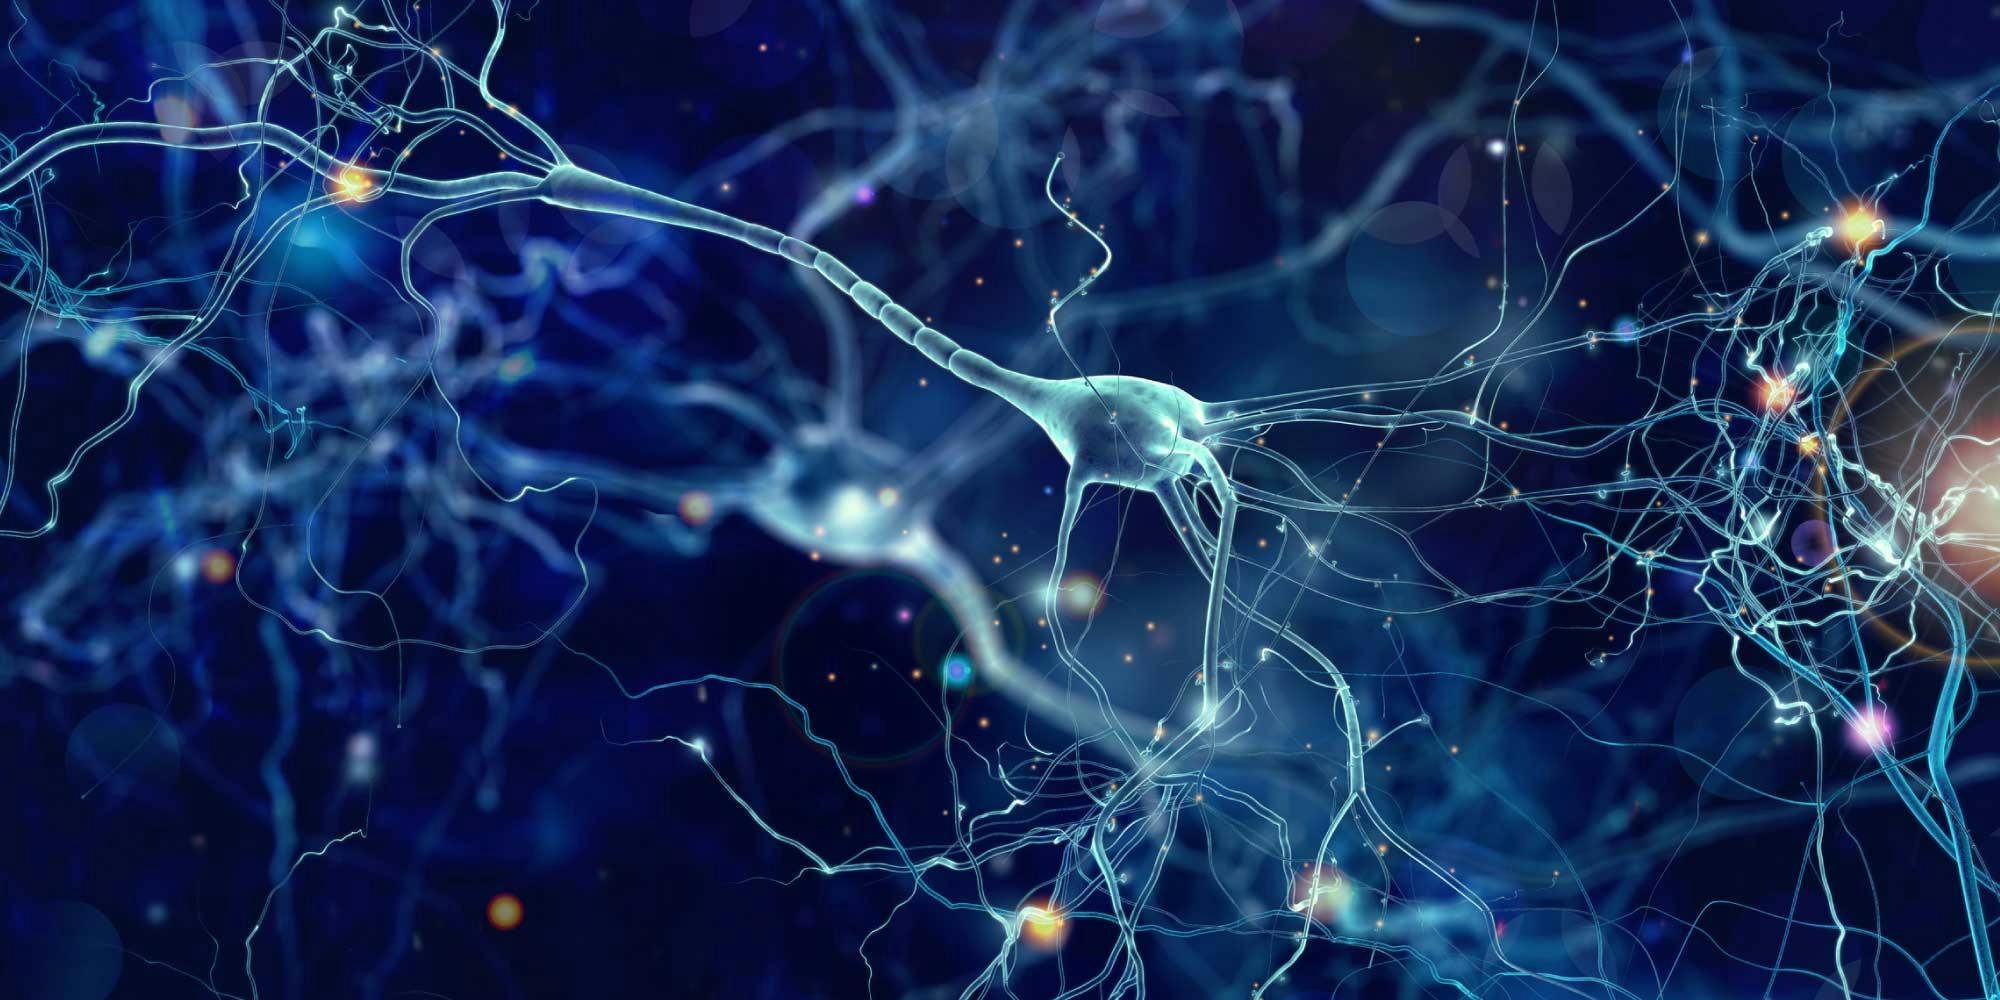 Brain neurons. Neyron tarmoq. Нейронная система. Нейронные сети головного мозга. Связь нейронов головного мозга.